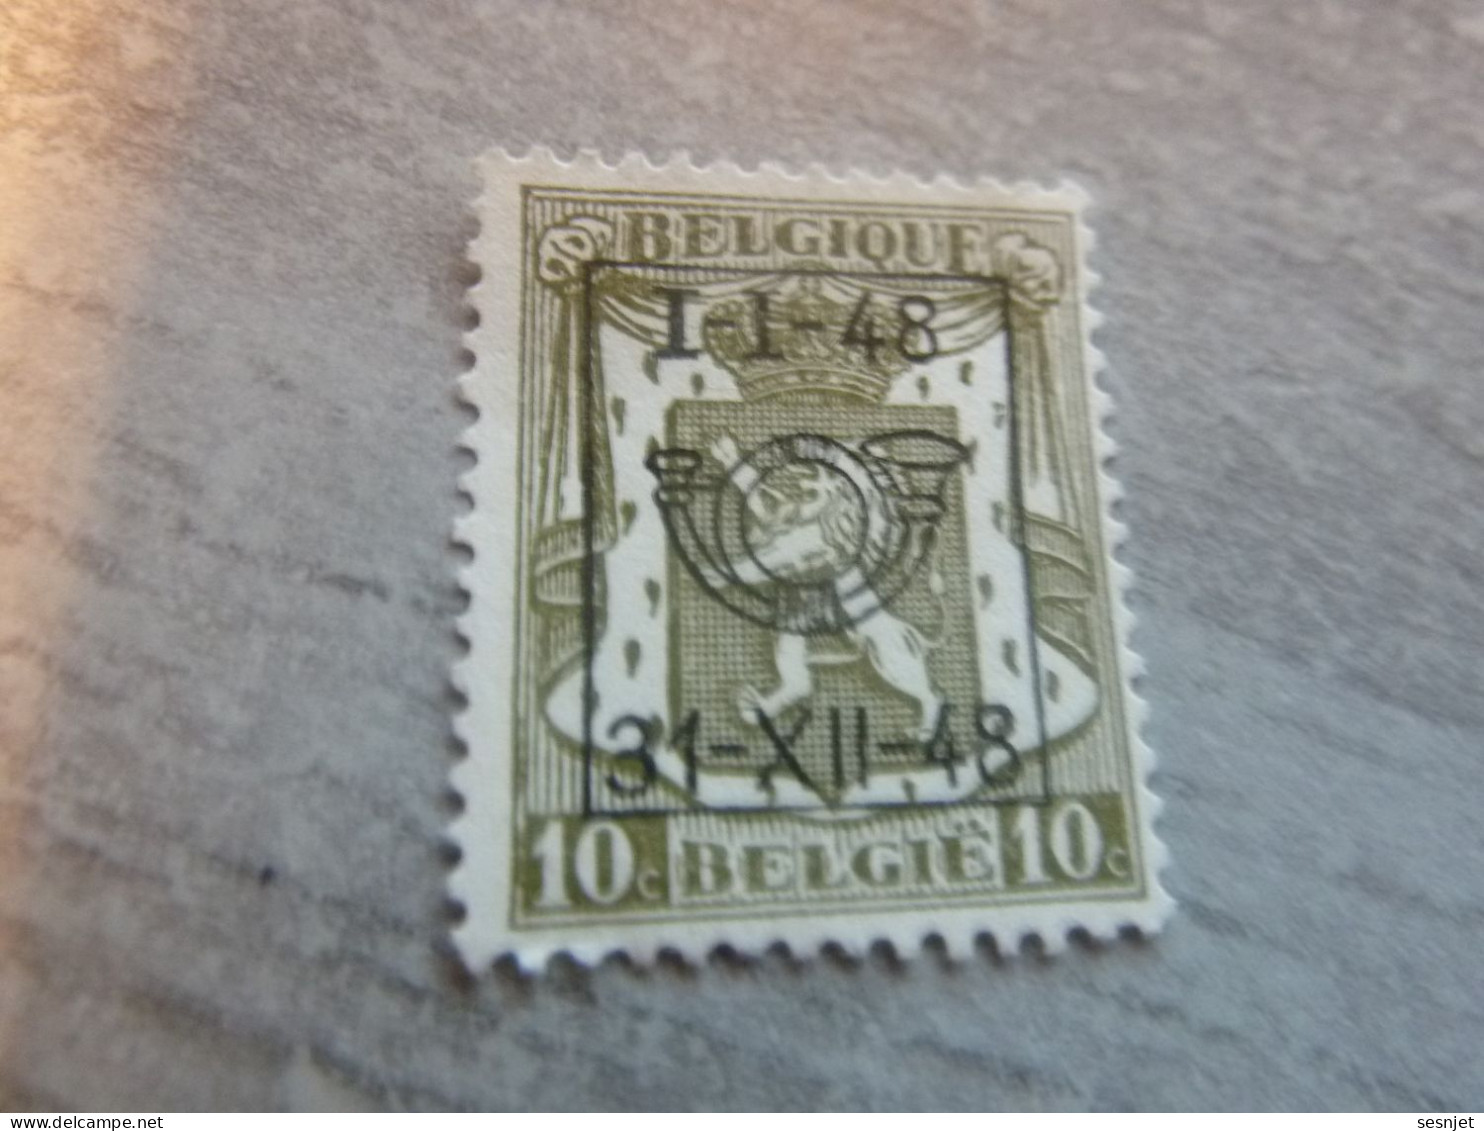 Belgique - Lion - Préoblitéré - 10c. - Gris - Neuf - Année 1948 - - Typos 1951-80 (Chiffre Sur Lion)